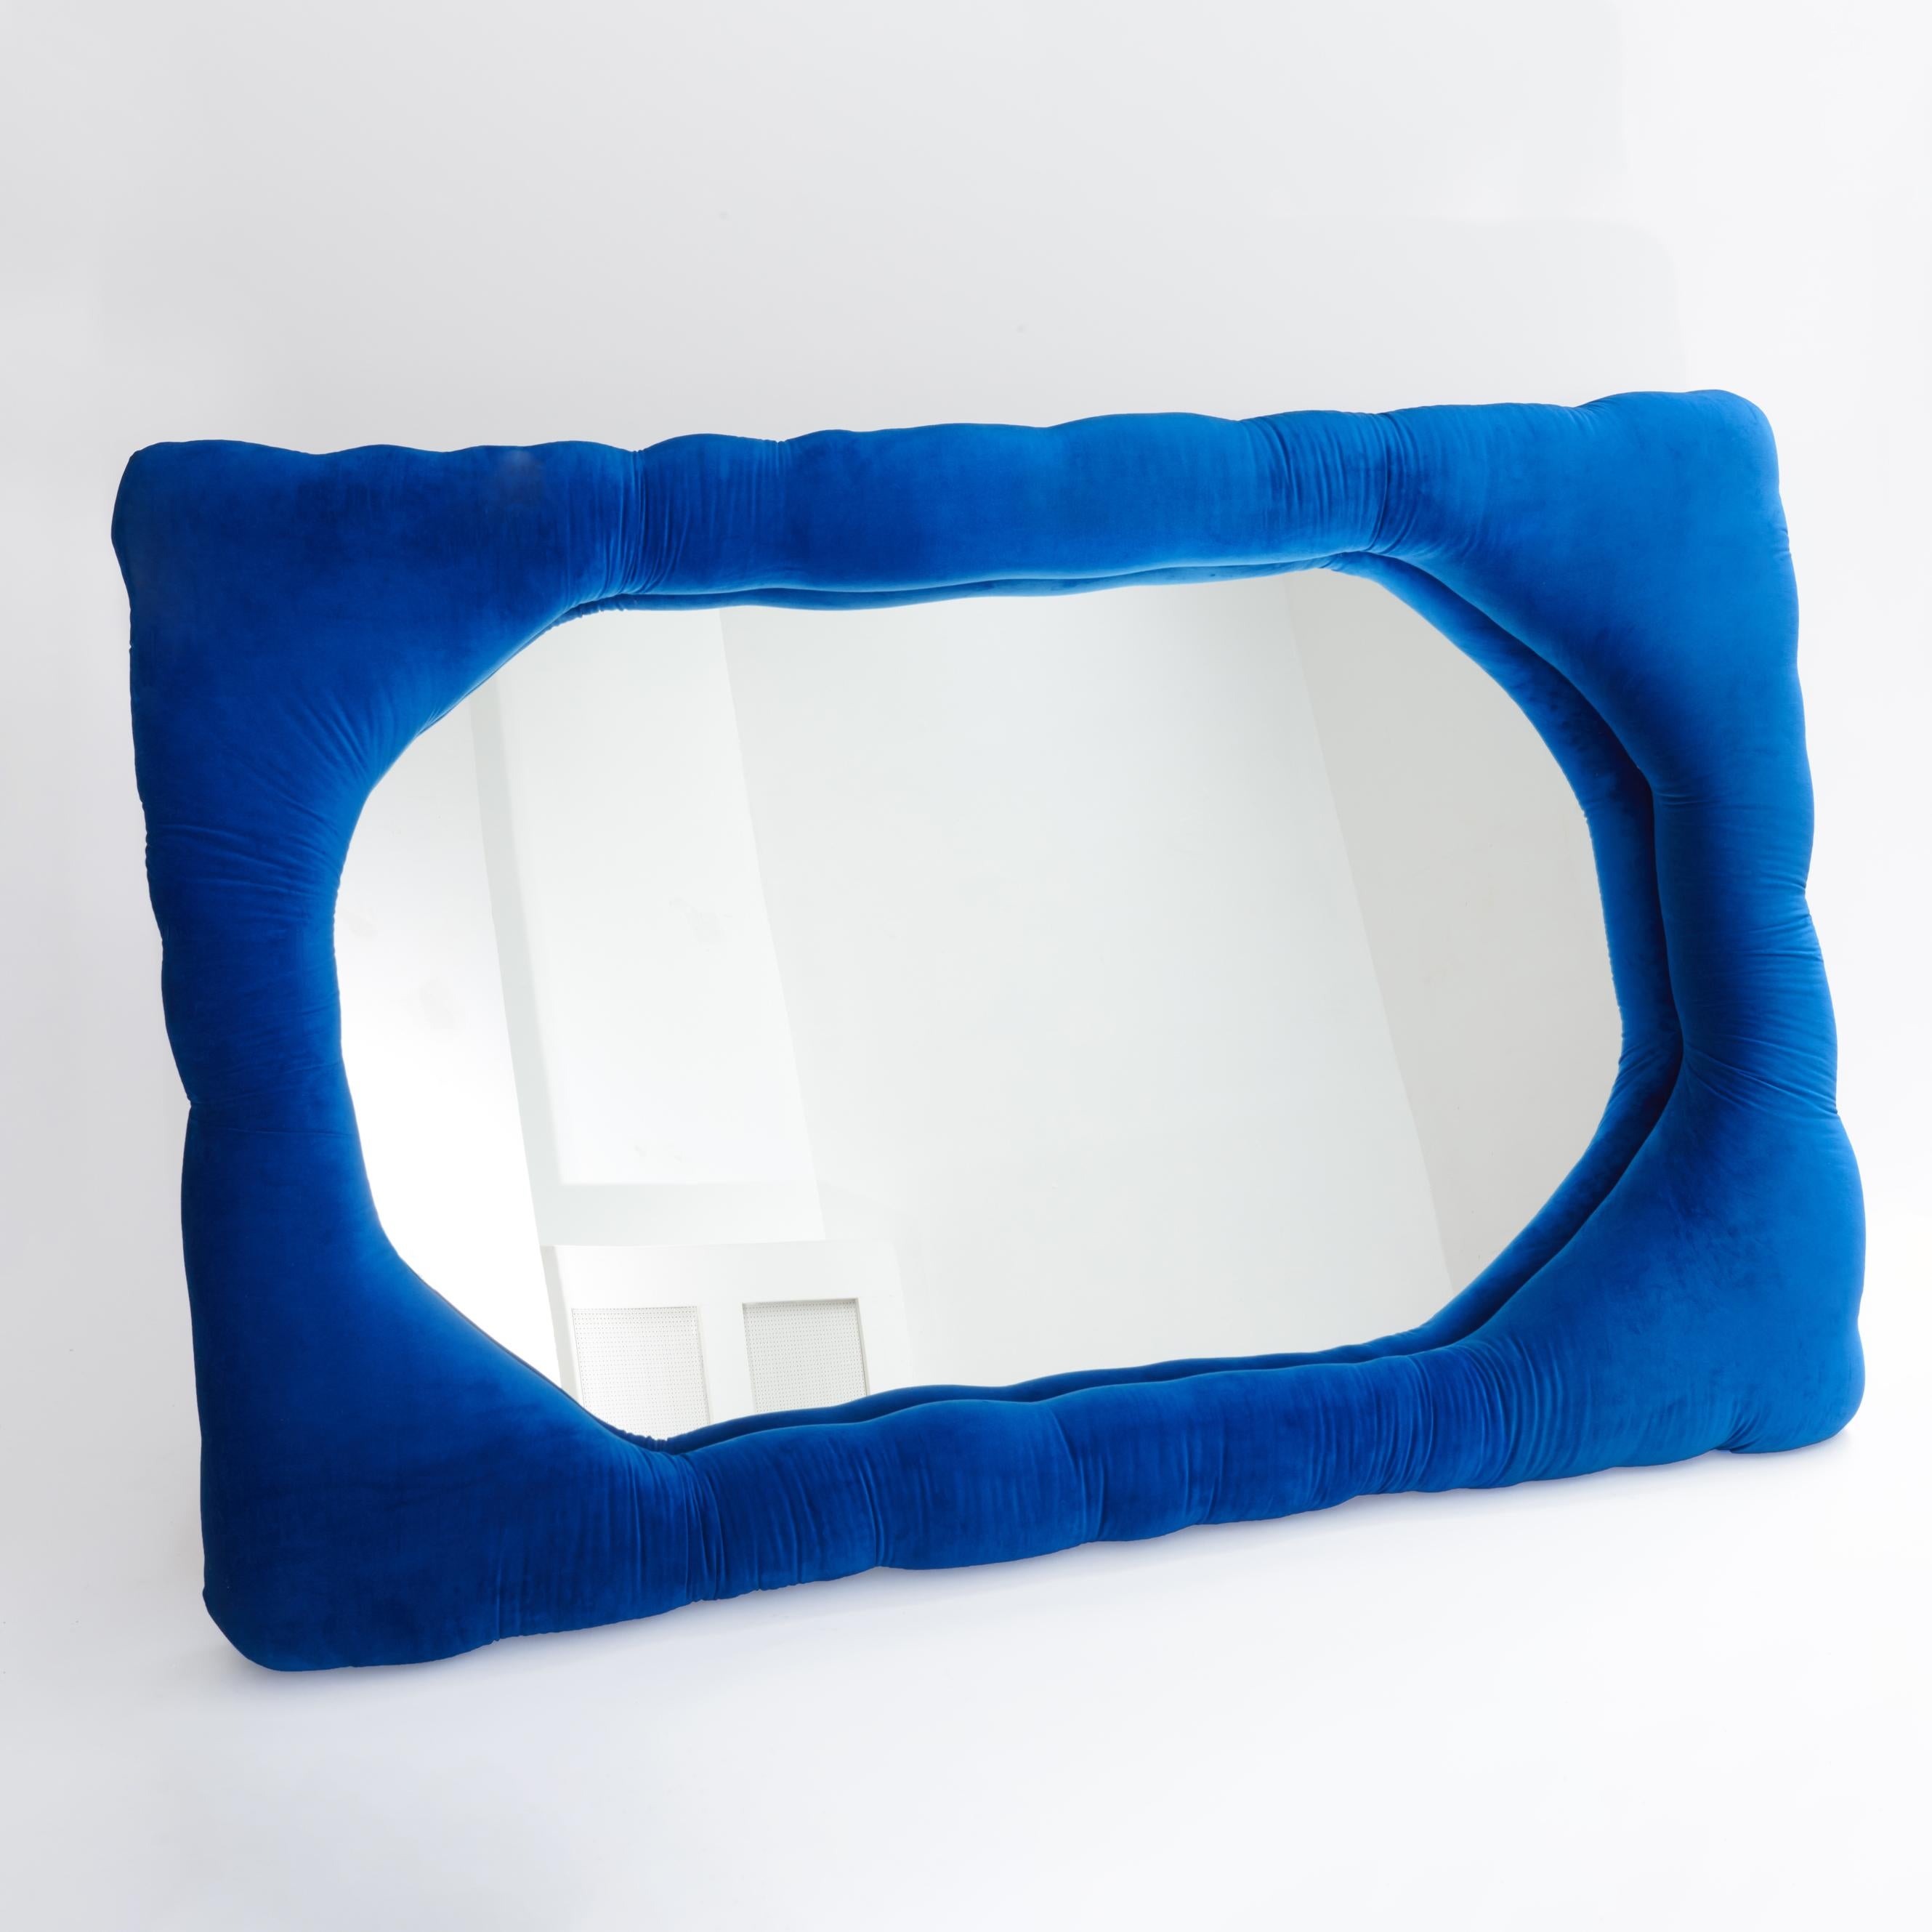 Miroir biomorphique par Brandi Howe

Tissu velours, verre, bois

Illustration : 72 x 47 x 6 pouces.

Ce miroir est entièrement personnalisable dans de multiples options de couleurs, de tissus et de tailles.

Autres dimensions disponibles : 60 x 15